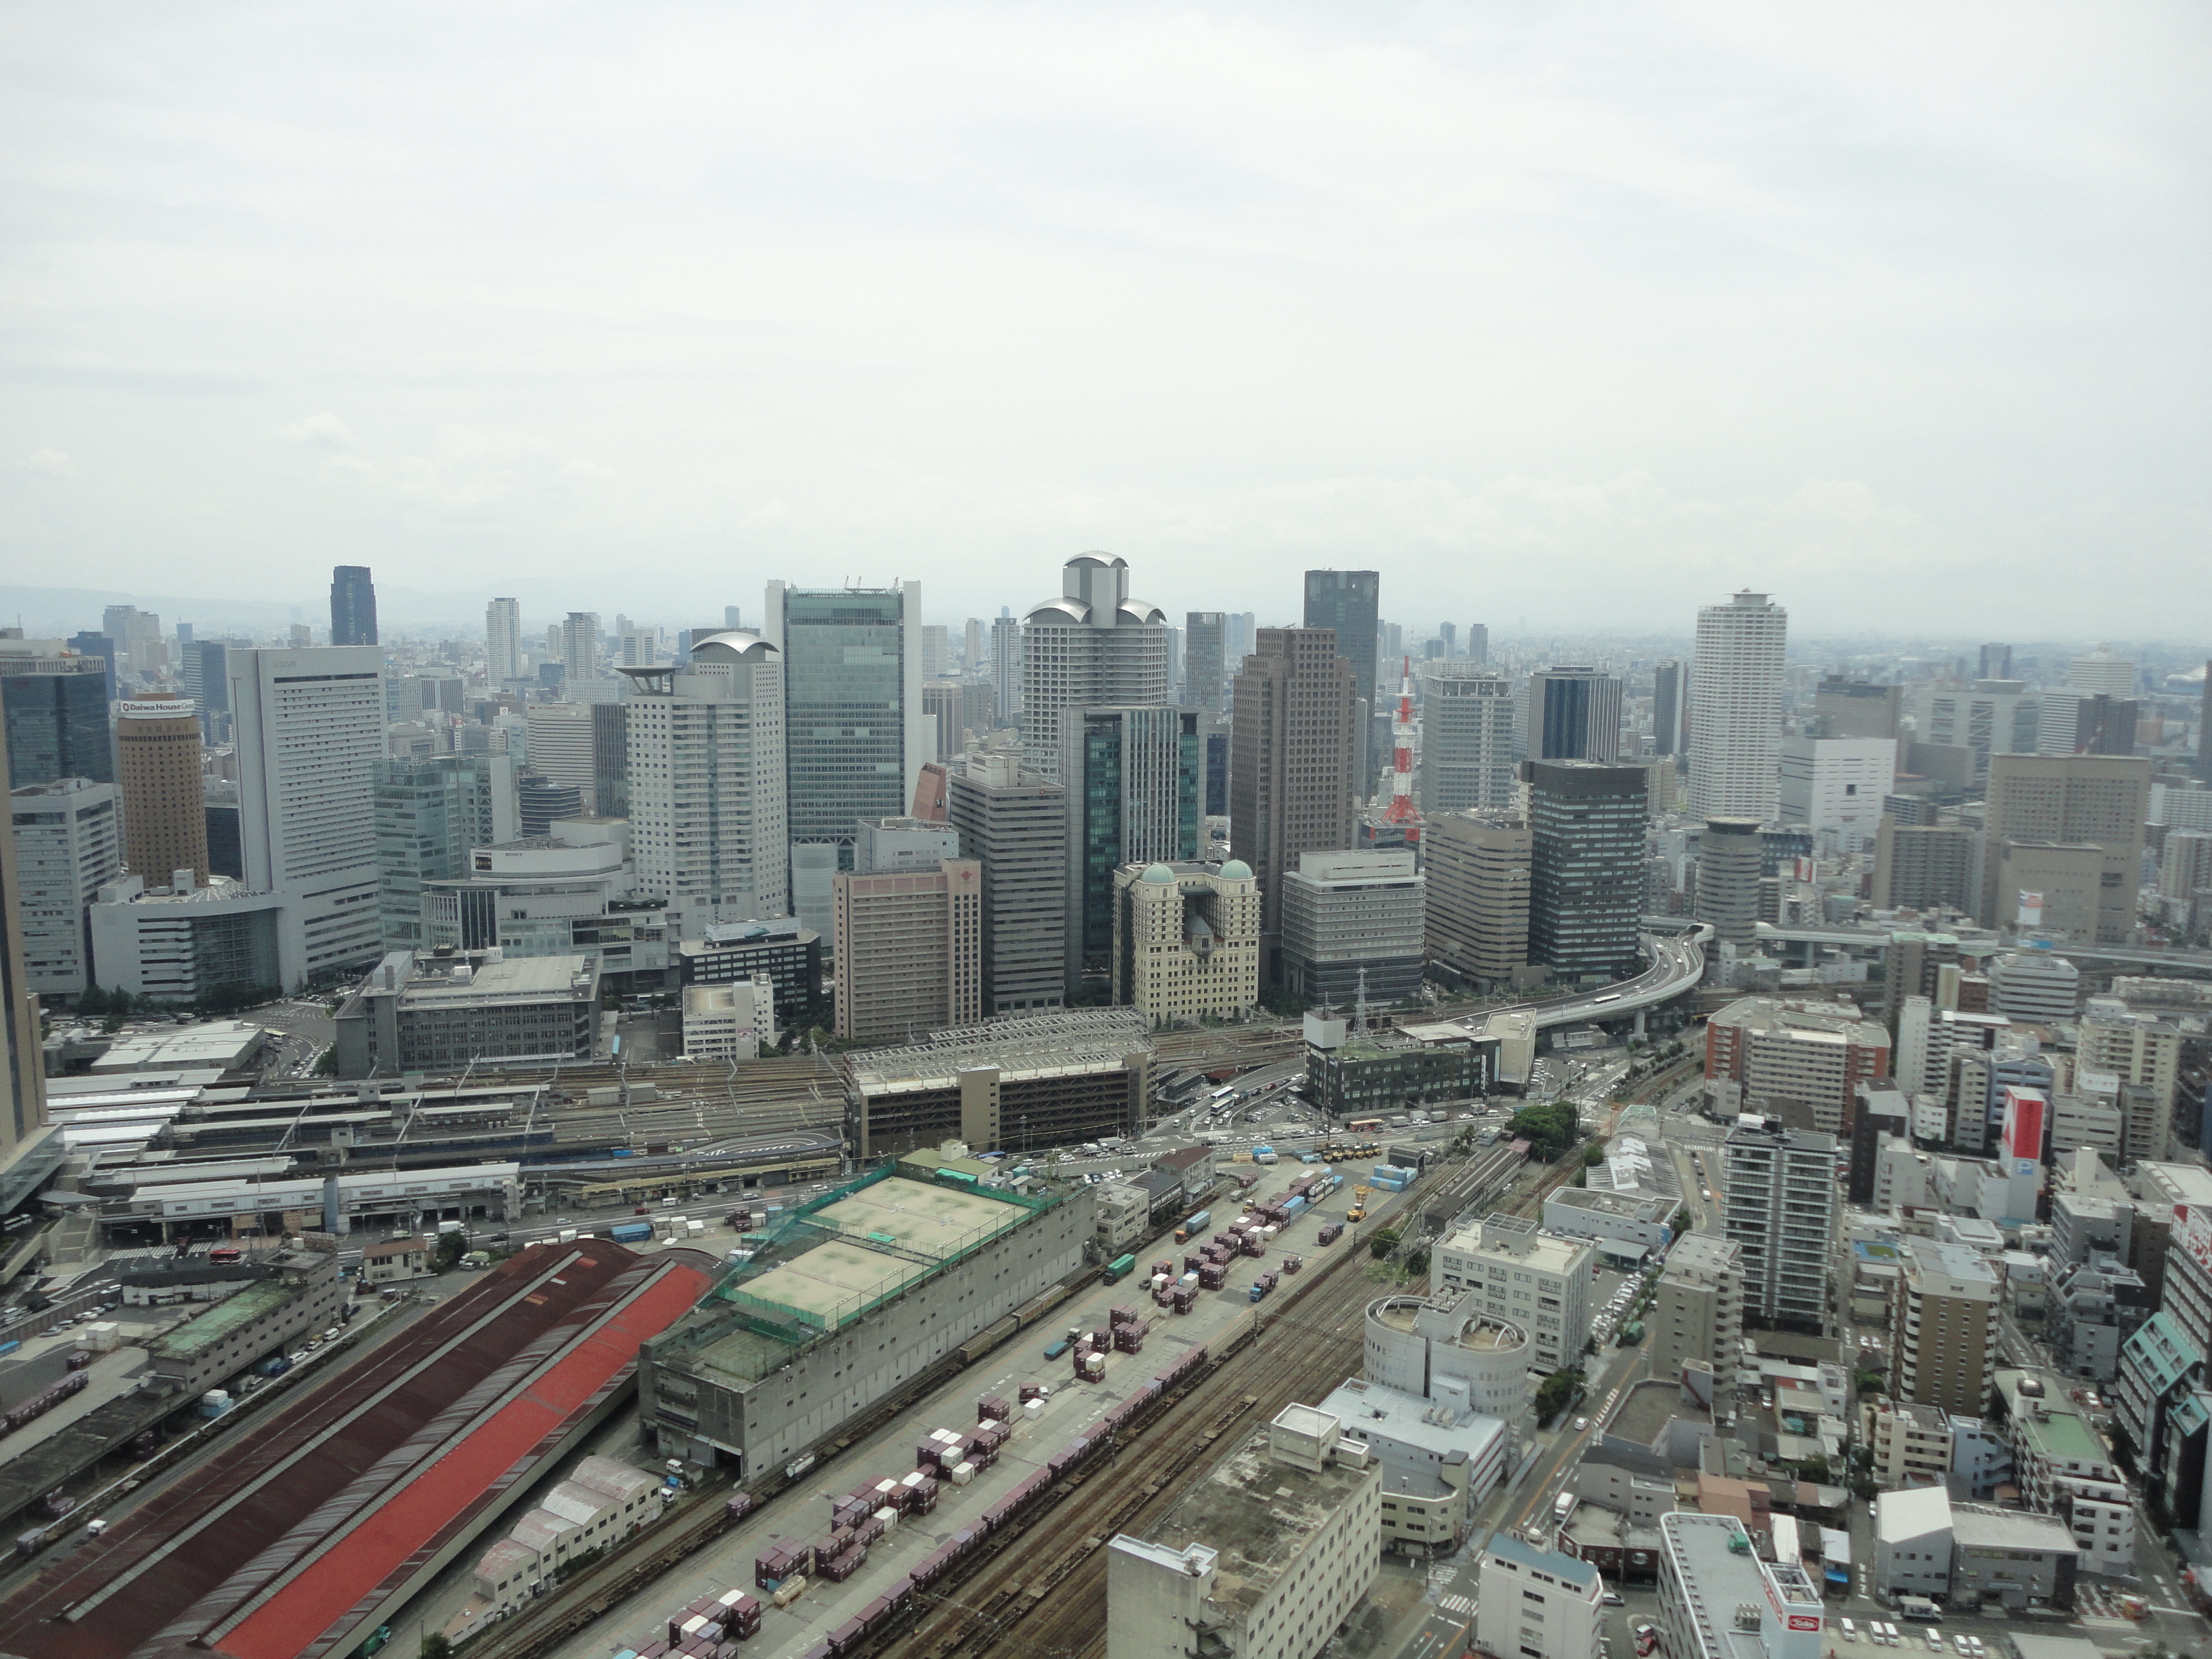 File:梅田スカイビル - panoramio.jpg - Wikimedia Commons